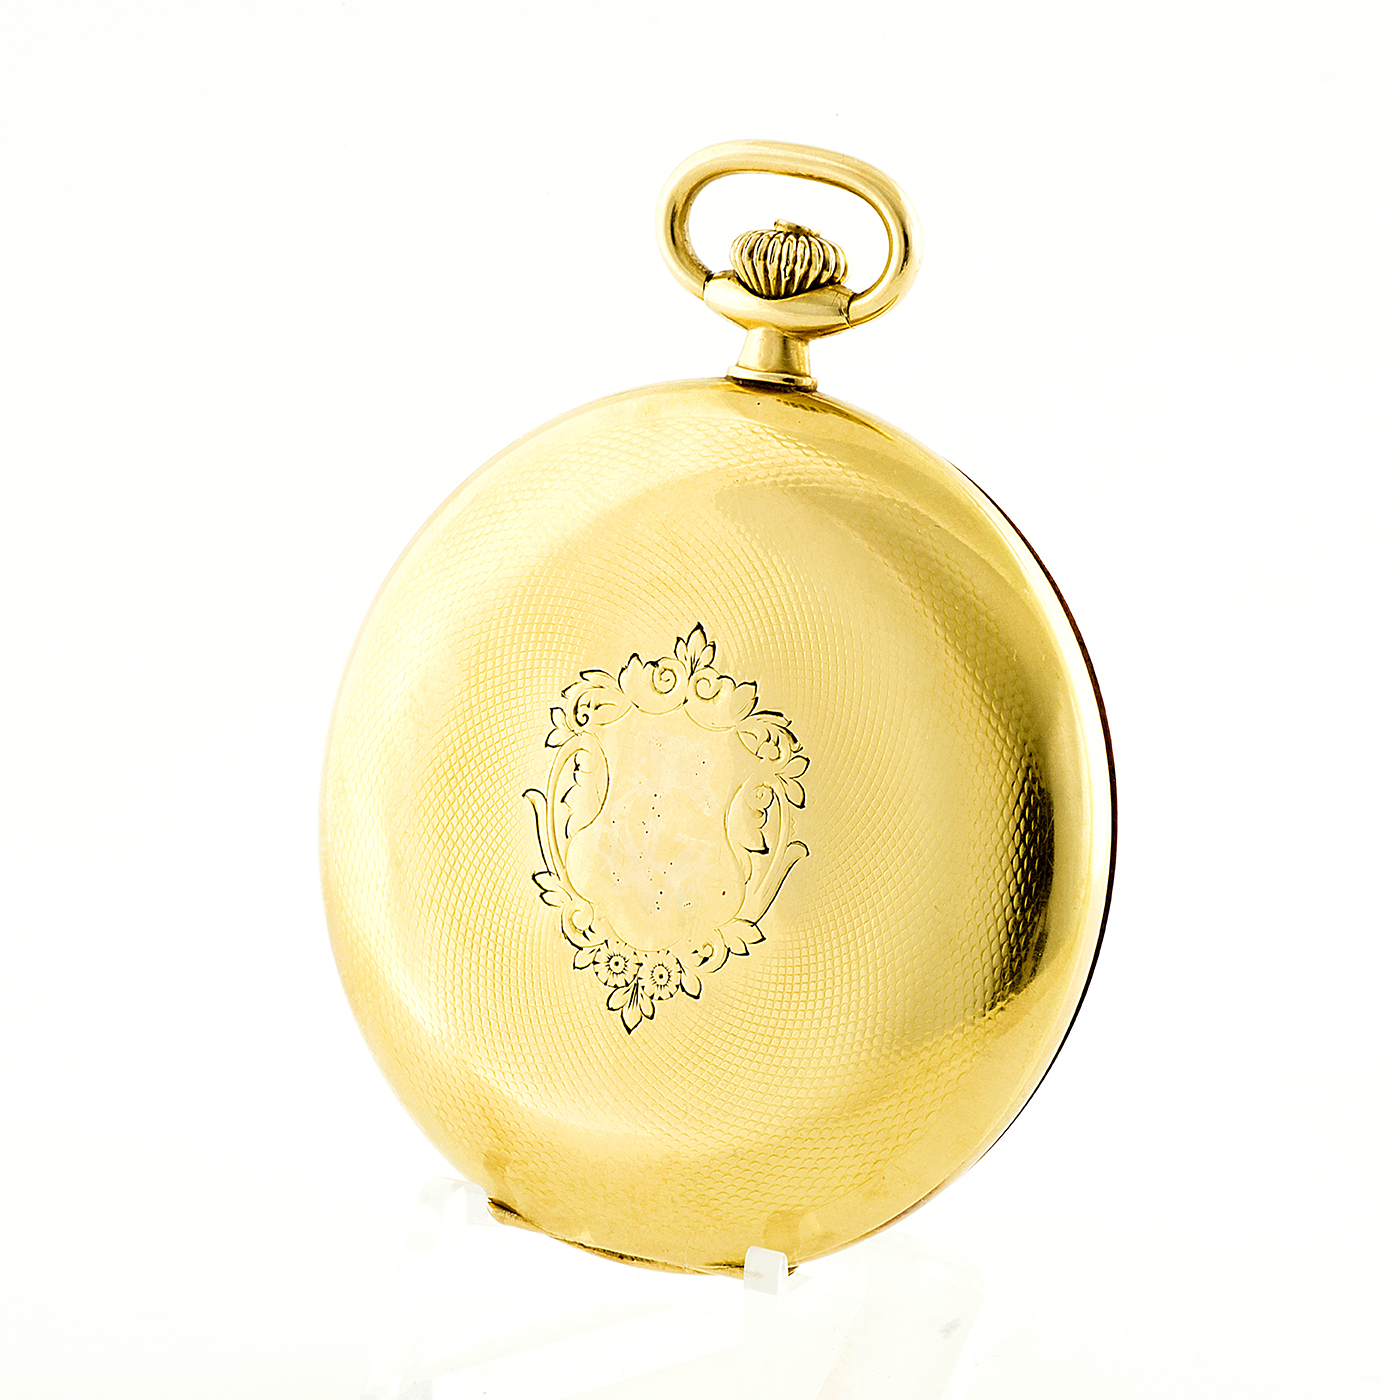 Segisa (Sevilla) - reloj de bolsillo - saboneta y remontoir.Oro 18k. ca. 1900